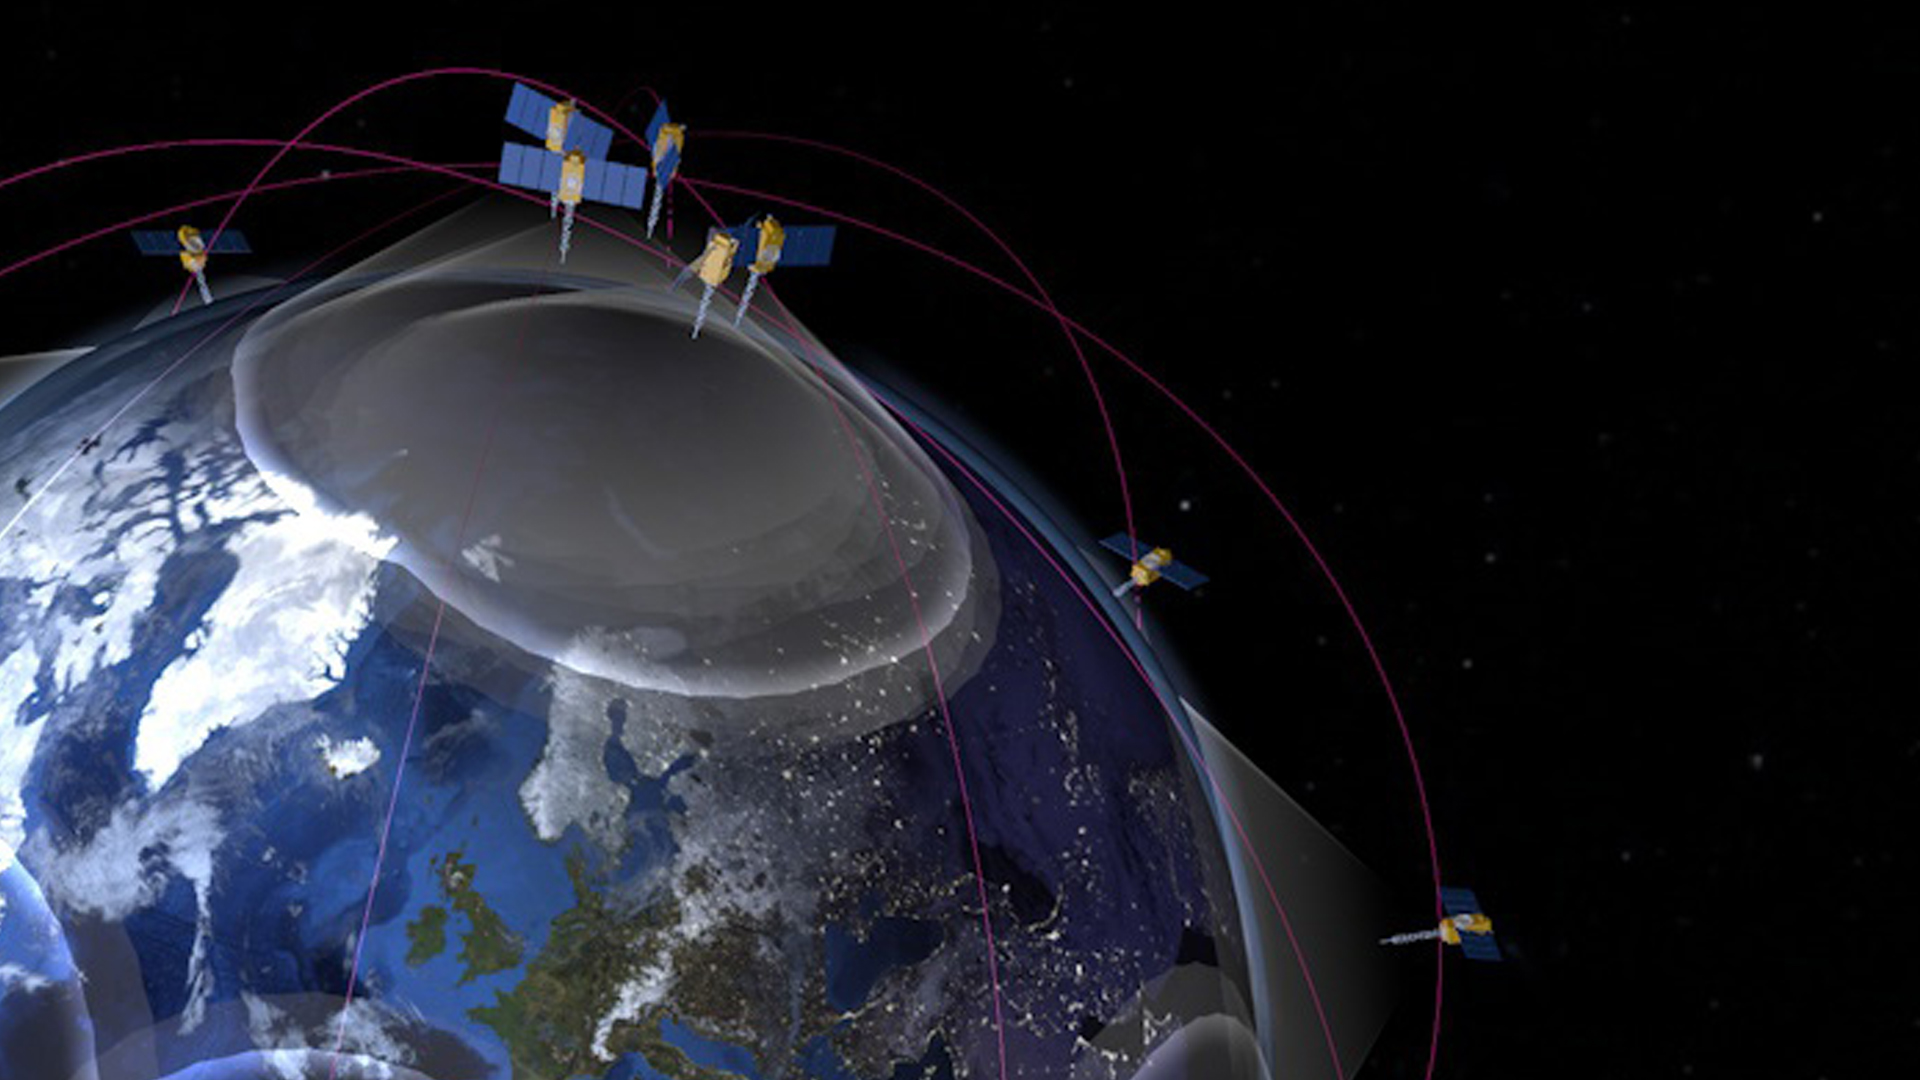 Des antennes ultra-miniaturisées pour les liaisons satellites – IoT